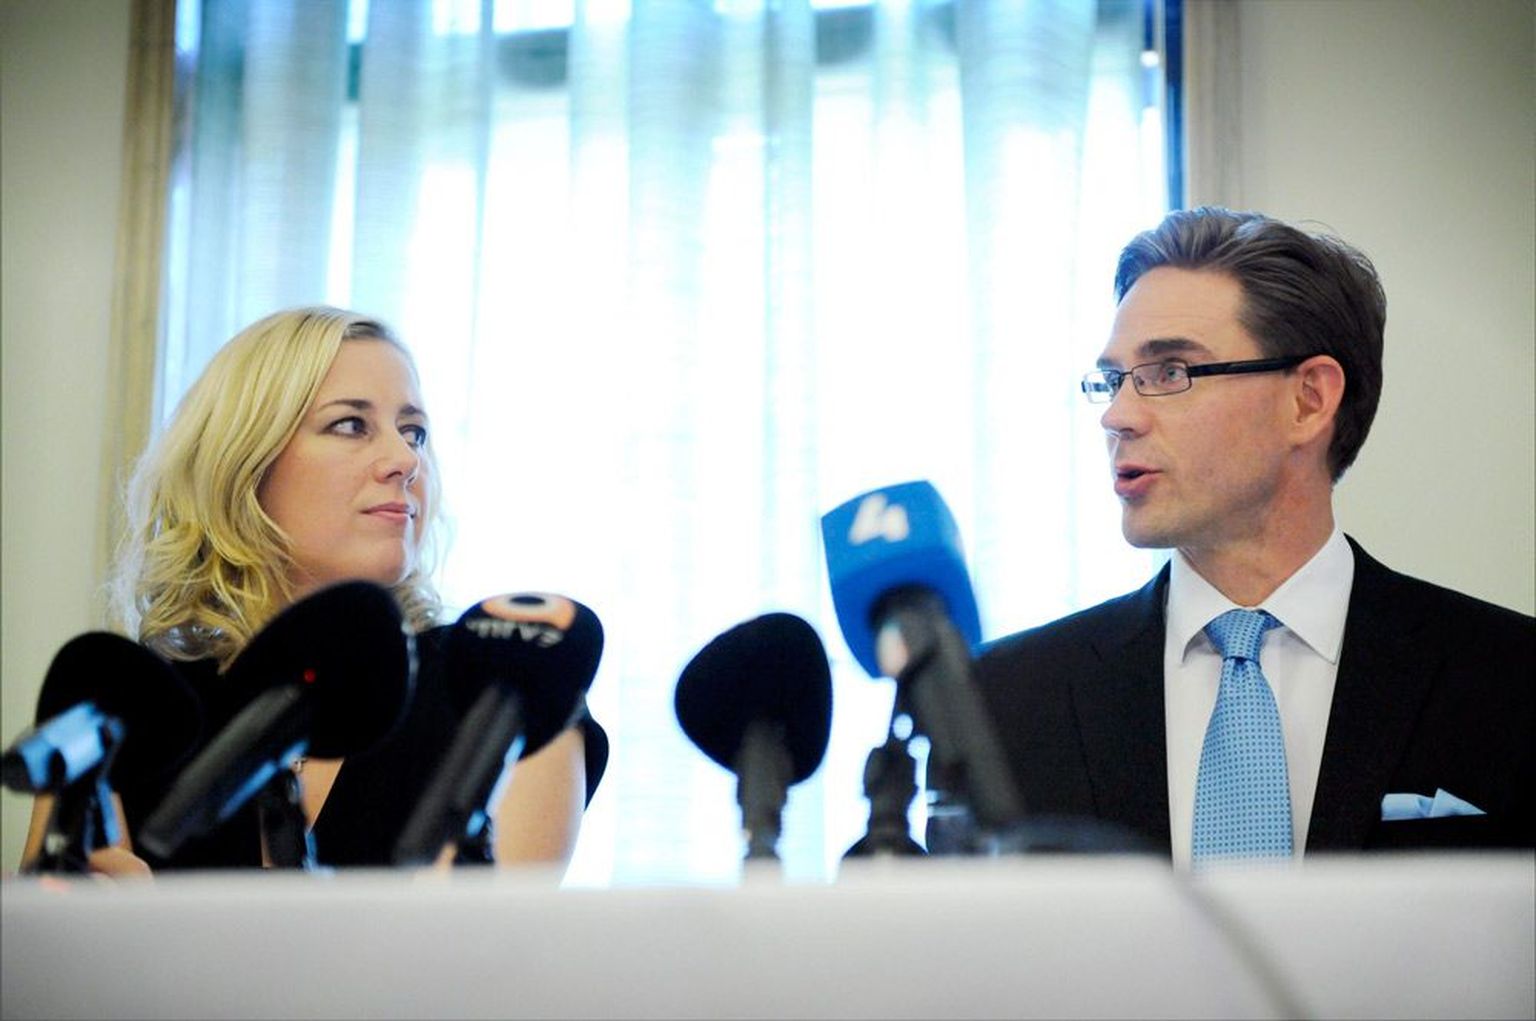 Uues valitsuses hakkavad põhiraskust kandma koonderakondlasest peaminister Jyrki Katainen ja sotsiaaldemokraadist rahandusminister Jutta Urpilainen.